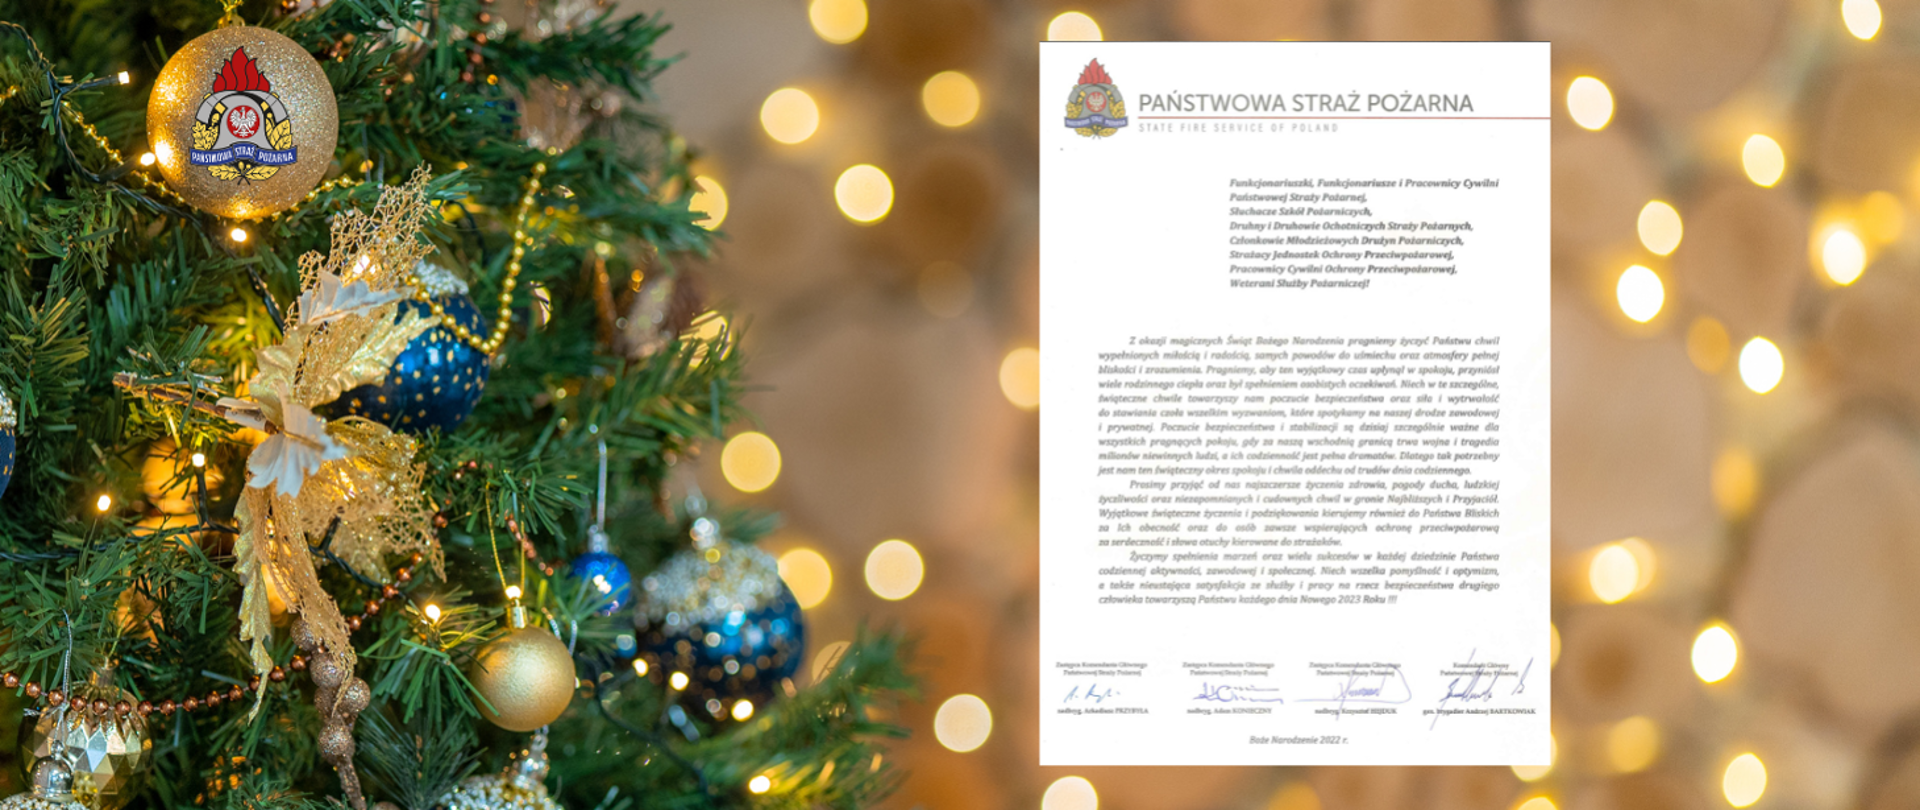 Życzenia świąteczno-noworoczne Komendanta Głównego PSP na tle na którym widać fragment choinki